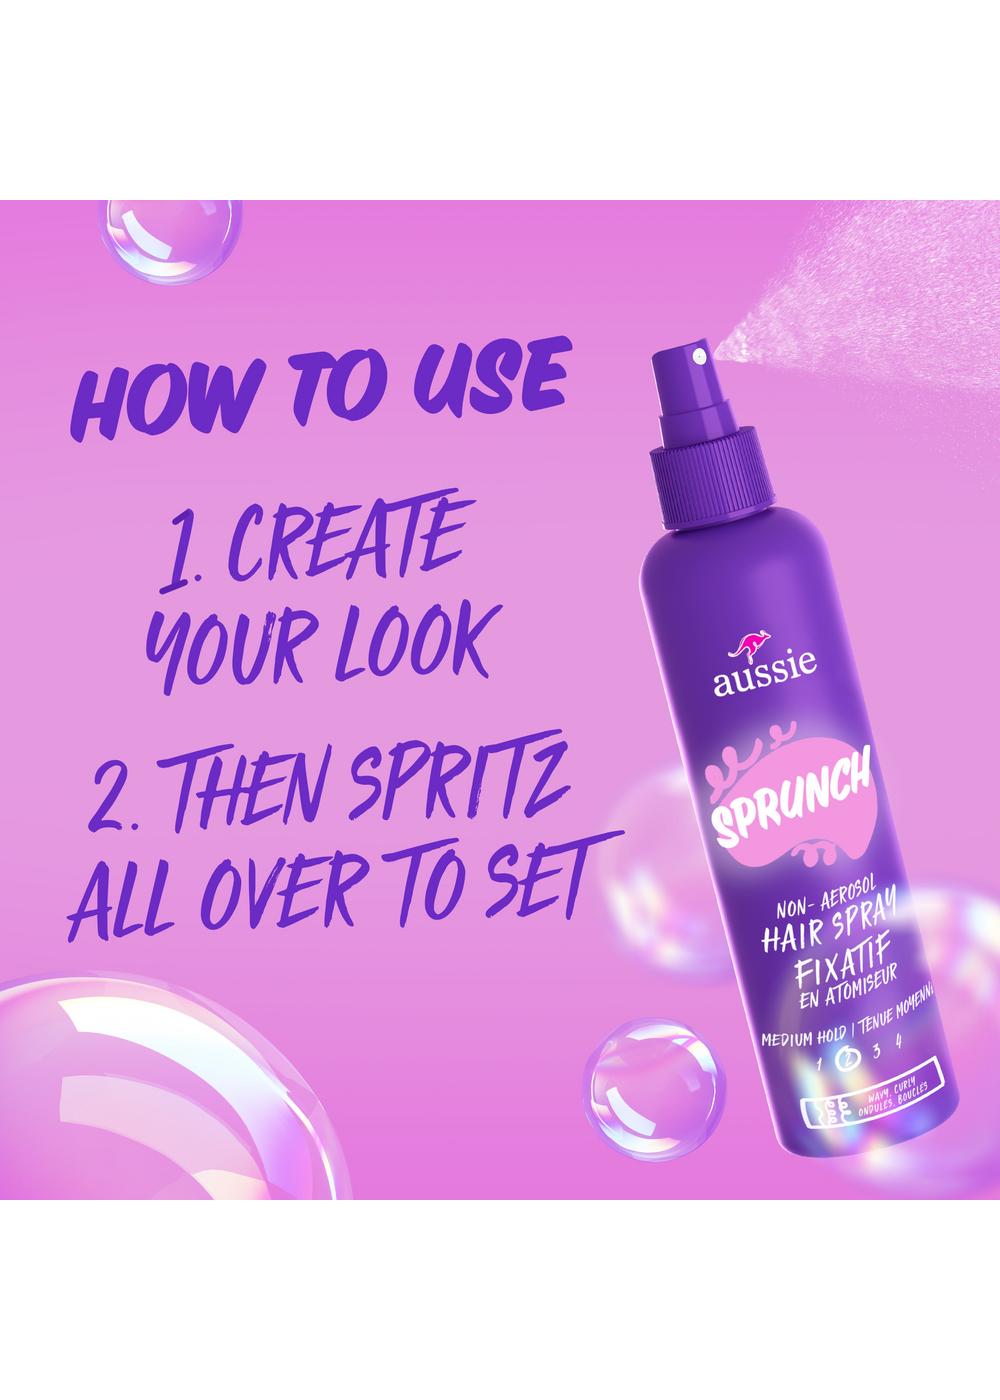 Aussie Sprunch Non-Aerosol Hair Spray; image 9 of 11